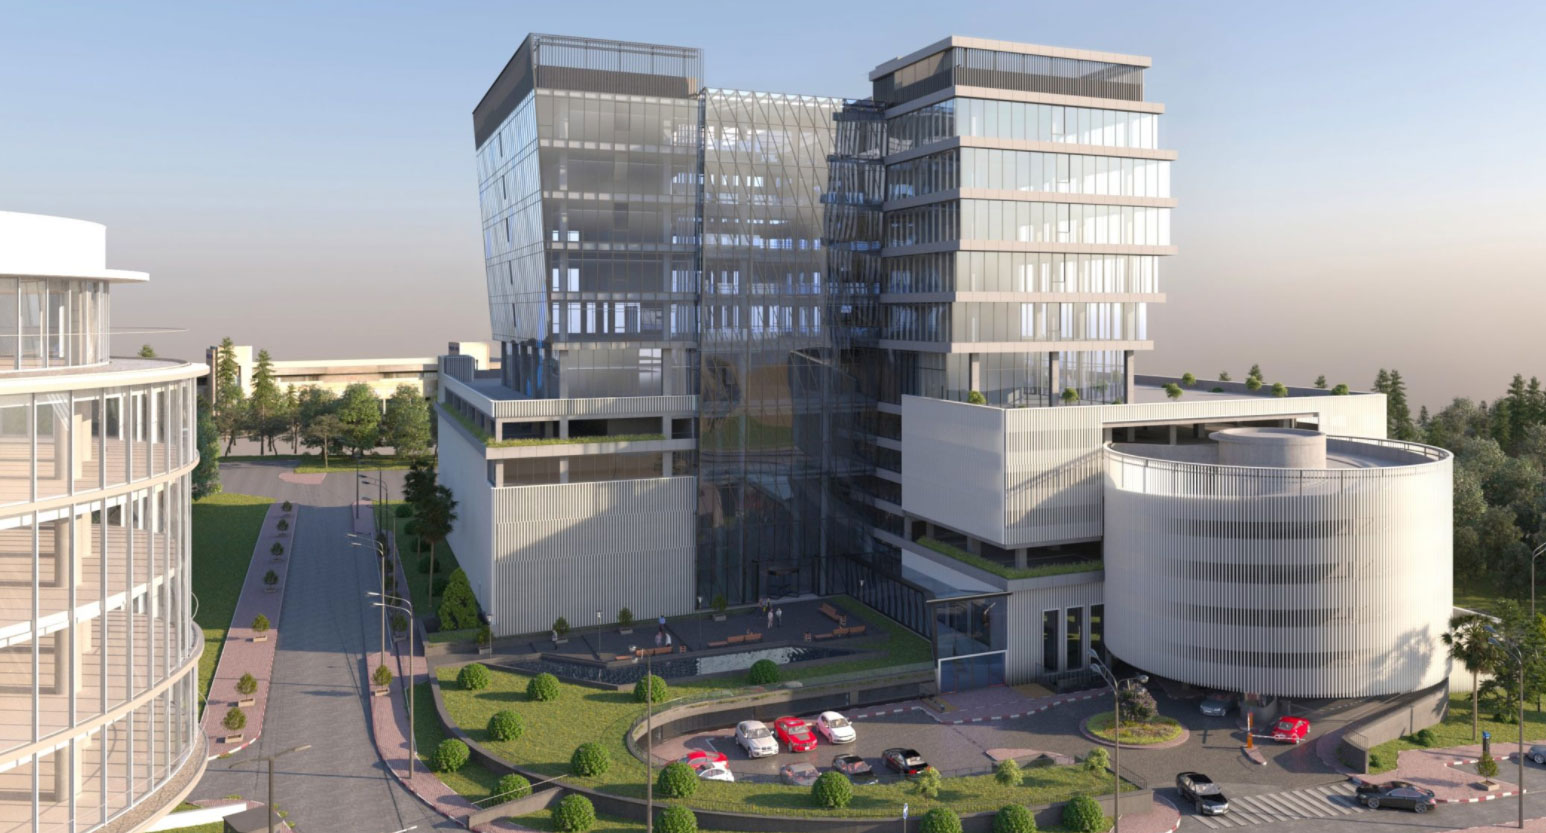 בניין אלביט ביקנעם- בניין הדגל של החברה המכיל מפעל, משרדים ומחסנים לוגיסטיים.